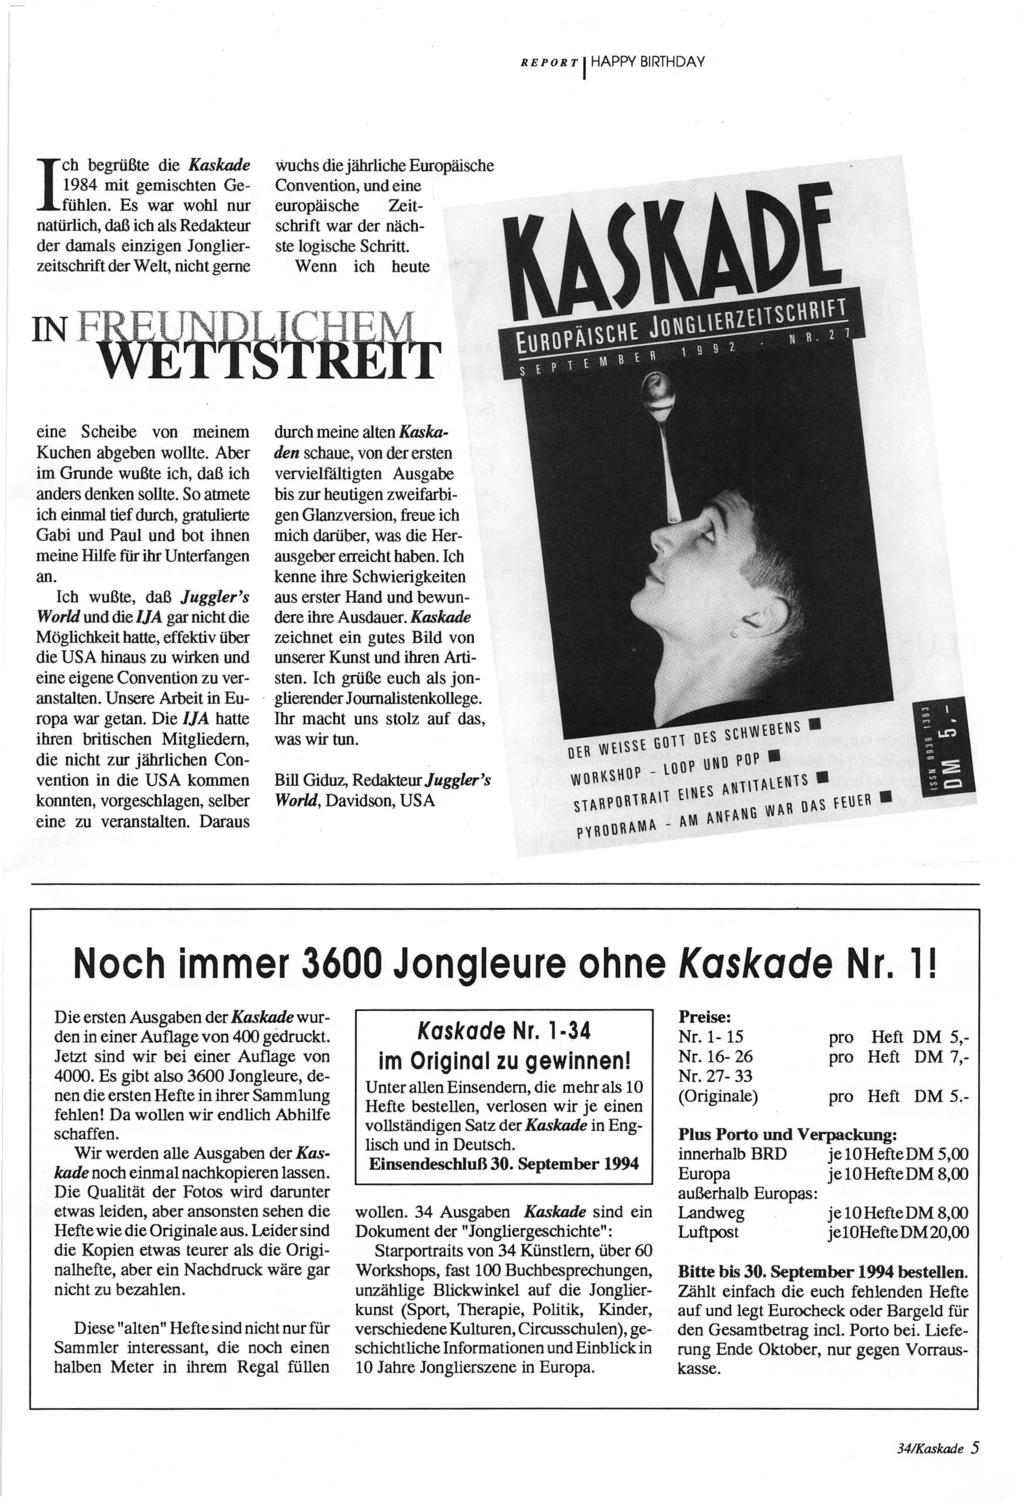 REPORT HAPPY BRTHDAY ch begrüßte die Kaskade 1984 mit gemischten Gefühlen.